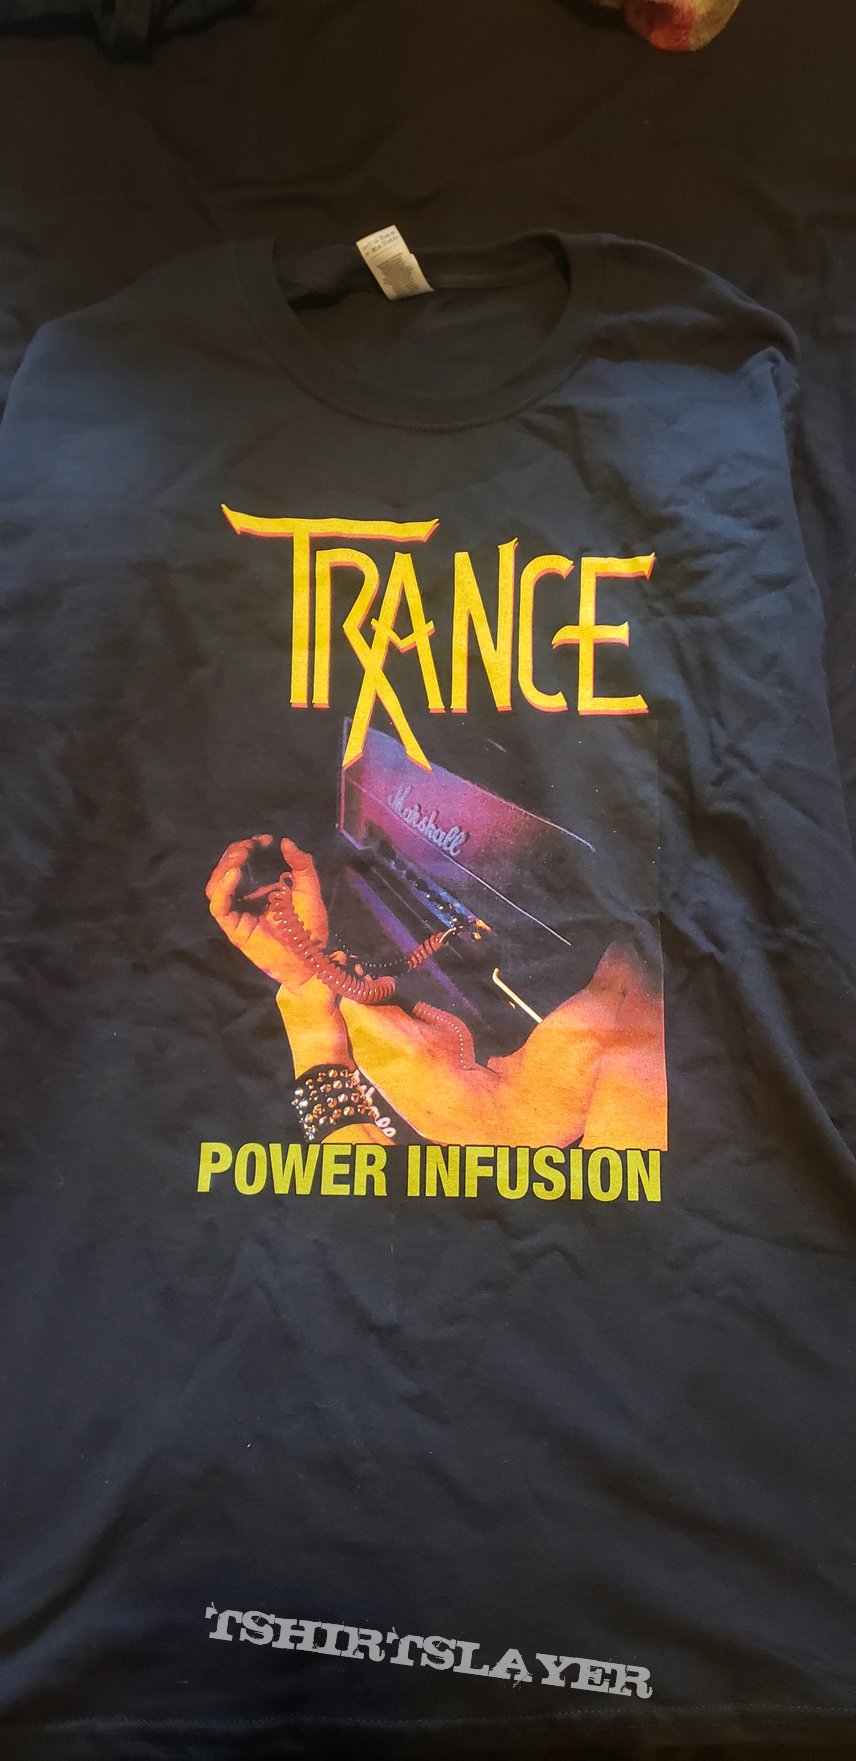 Trance power infusion Tshirt